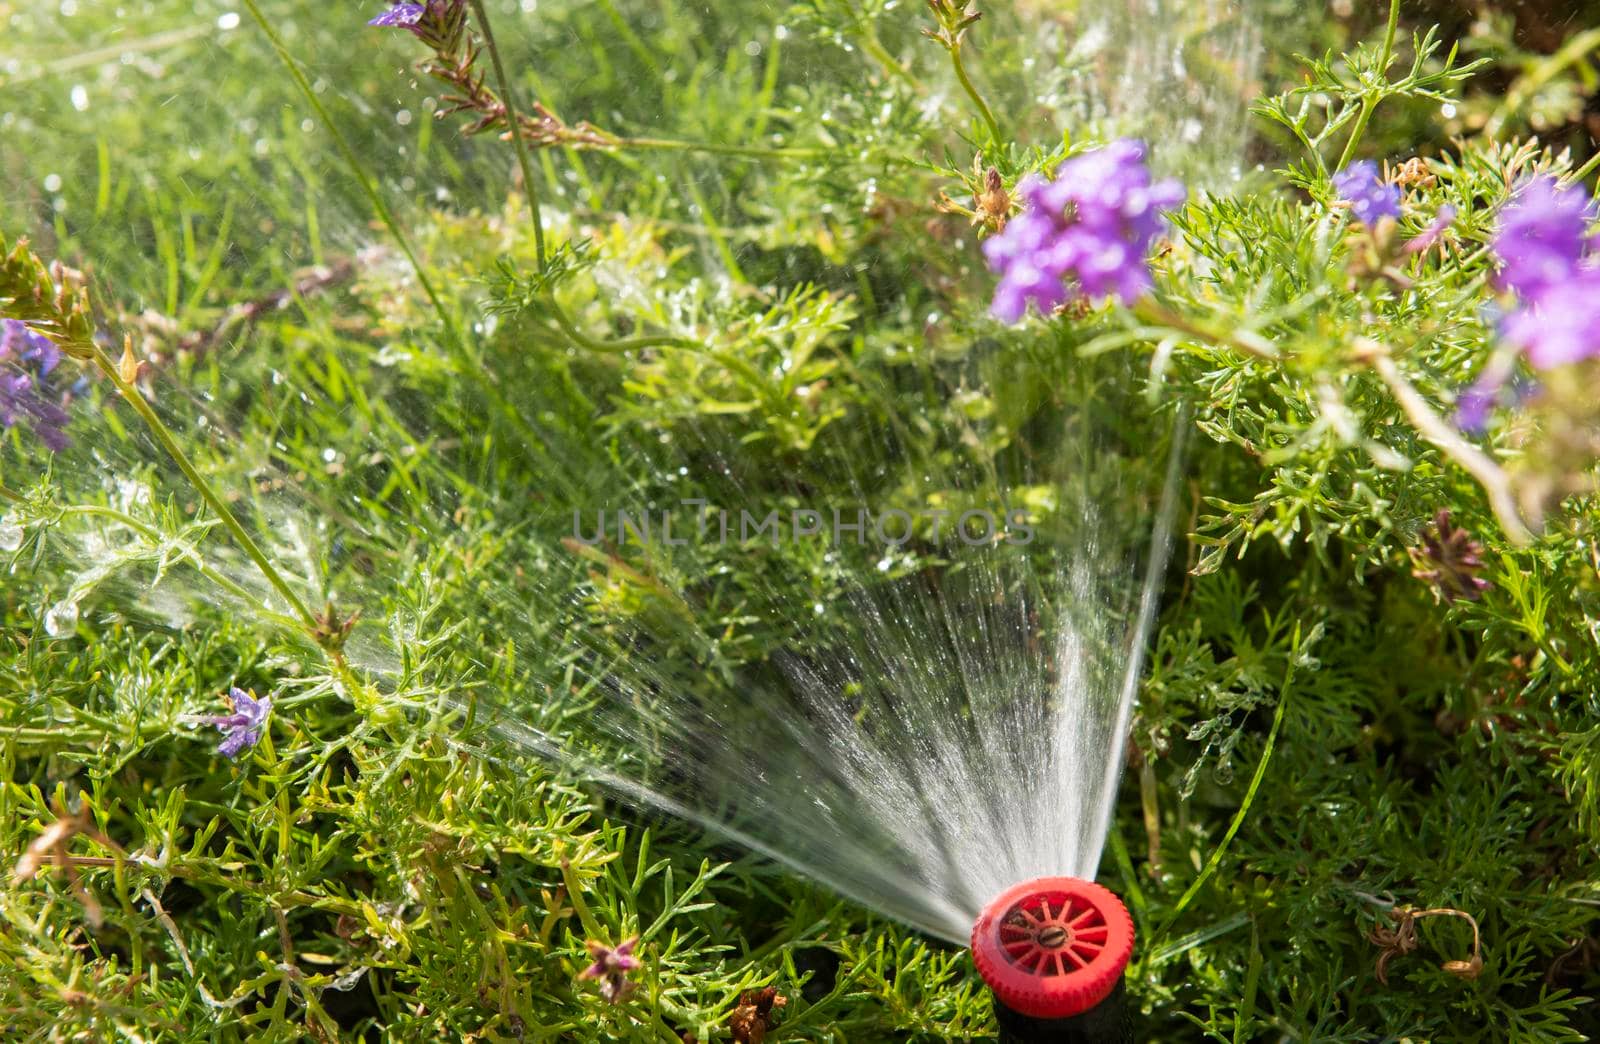 Closeup of garden sprinkler with water spray by paulvinten